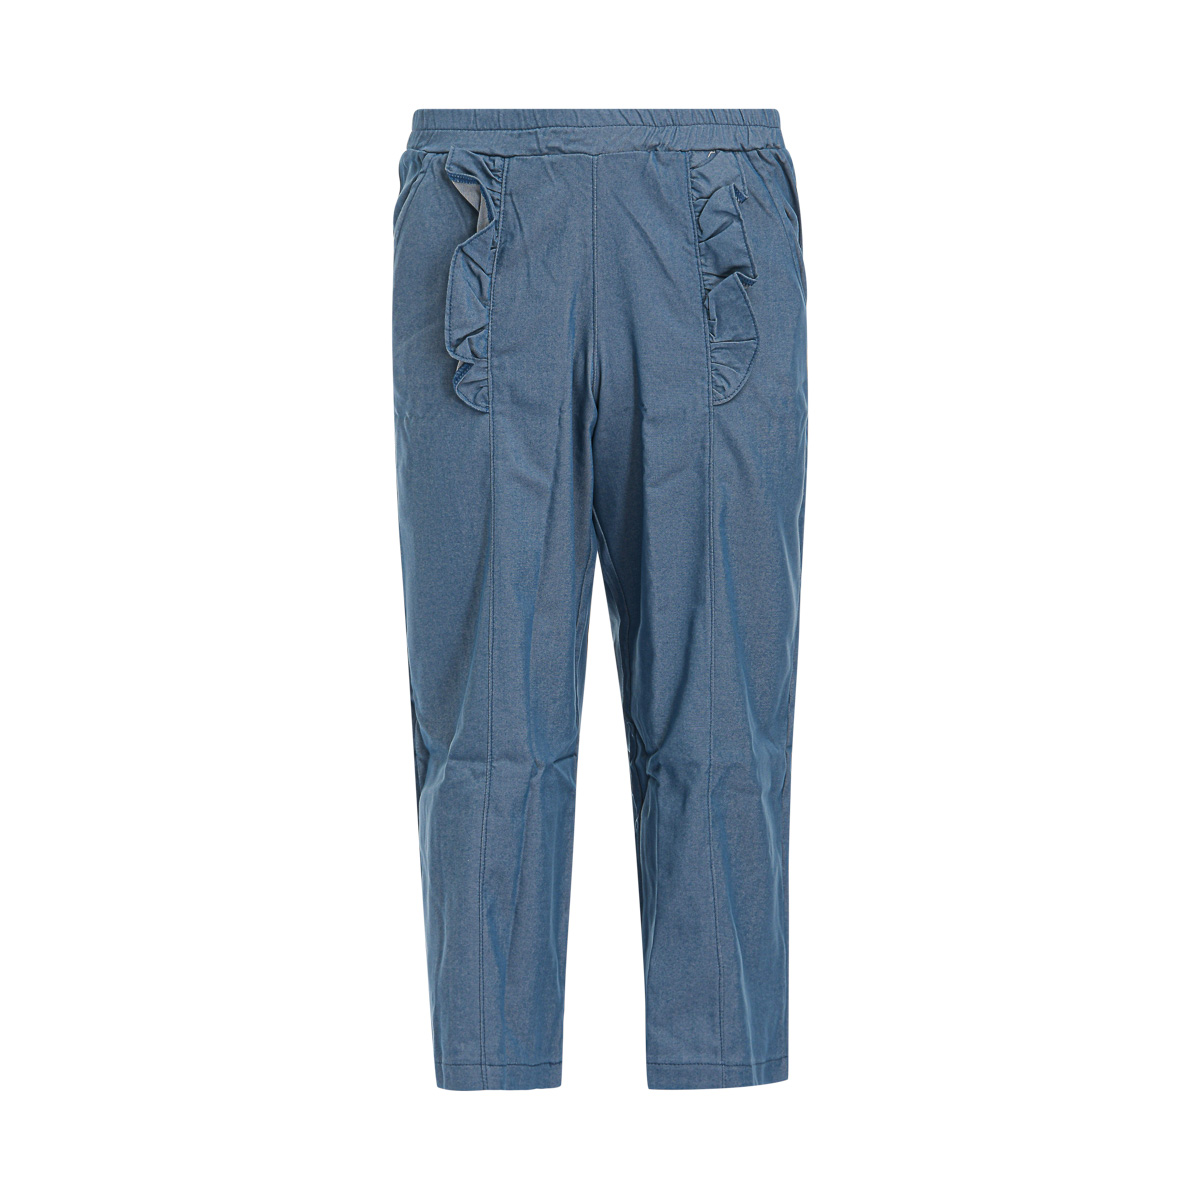 Παιδικά/Girls/Ρούχα/Παντελόνια SAM 0-13 - Παιδικό παντελόνι SAM 0-13 μπλε